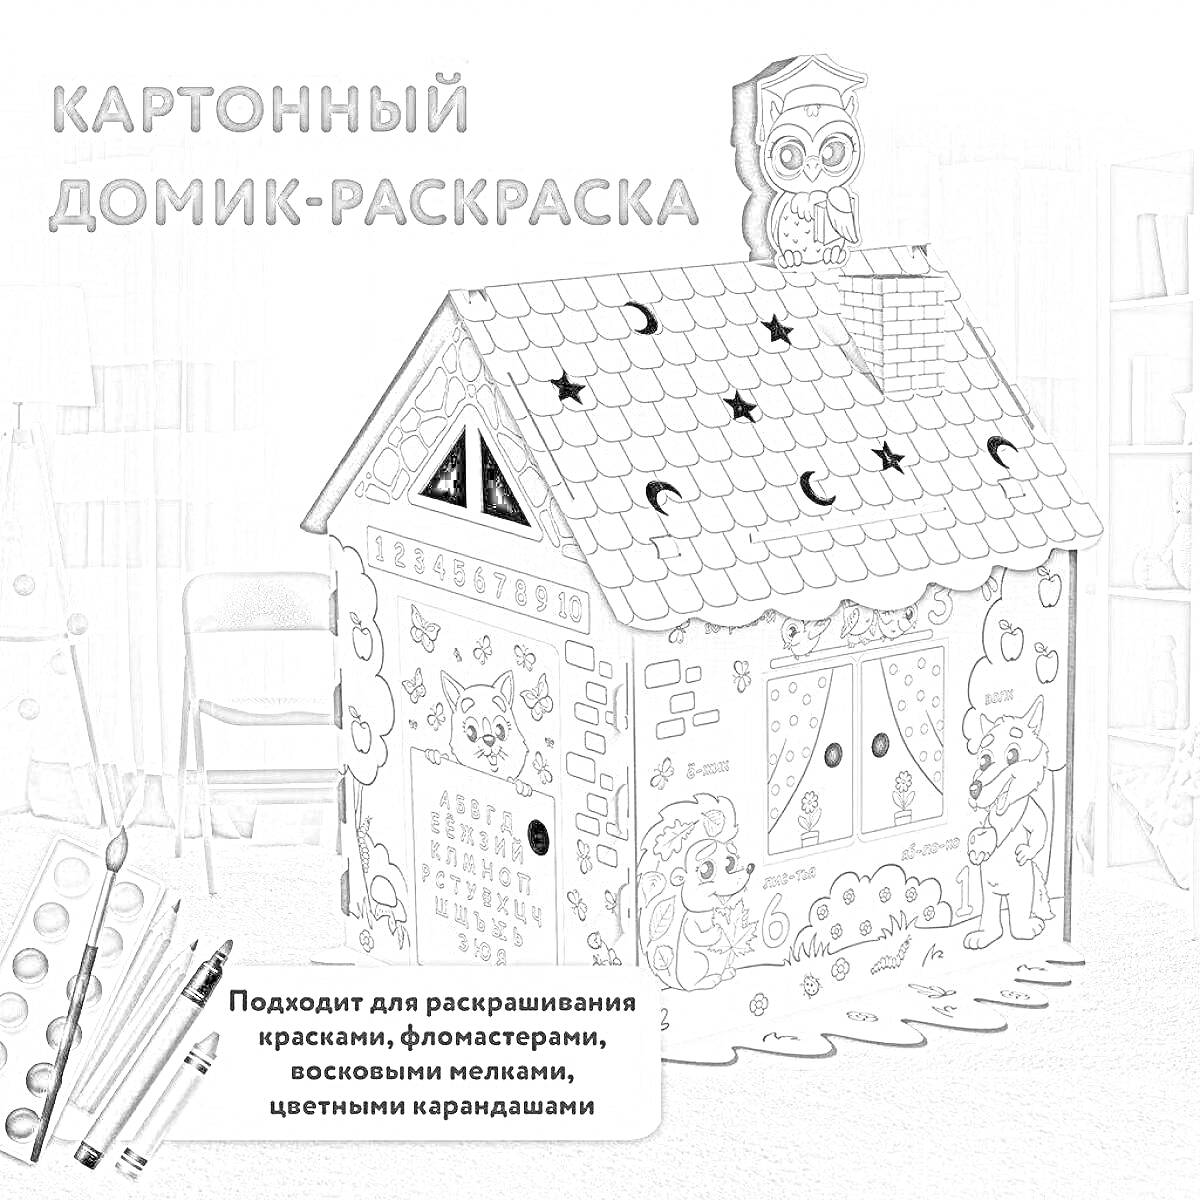 Раскраска Картонный домик-раскраска с персонажами, звездами и луной на крыше, окнами и дверями, в комплекте с красками и фломастерами